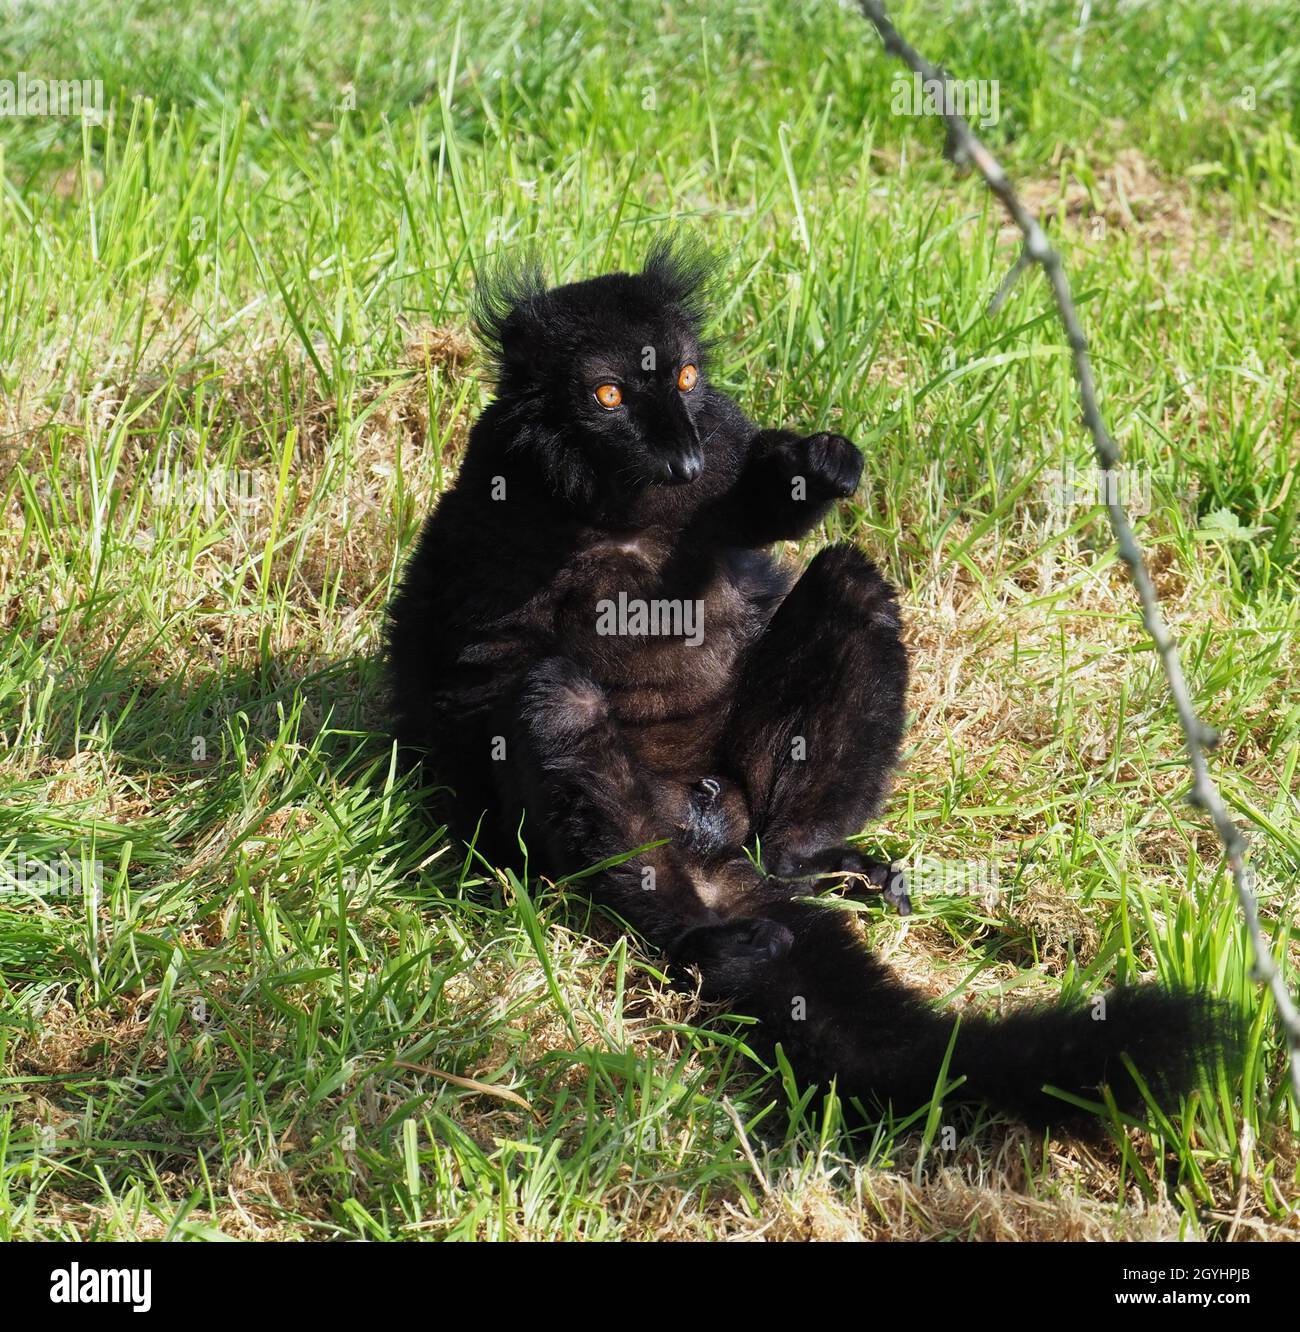 Männlicher schwarzer Lemur, der den herbstlichen sonnigen Tag genießt und einige Strahlen fängt Stockfoto